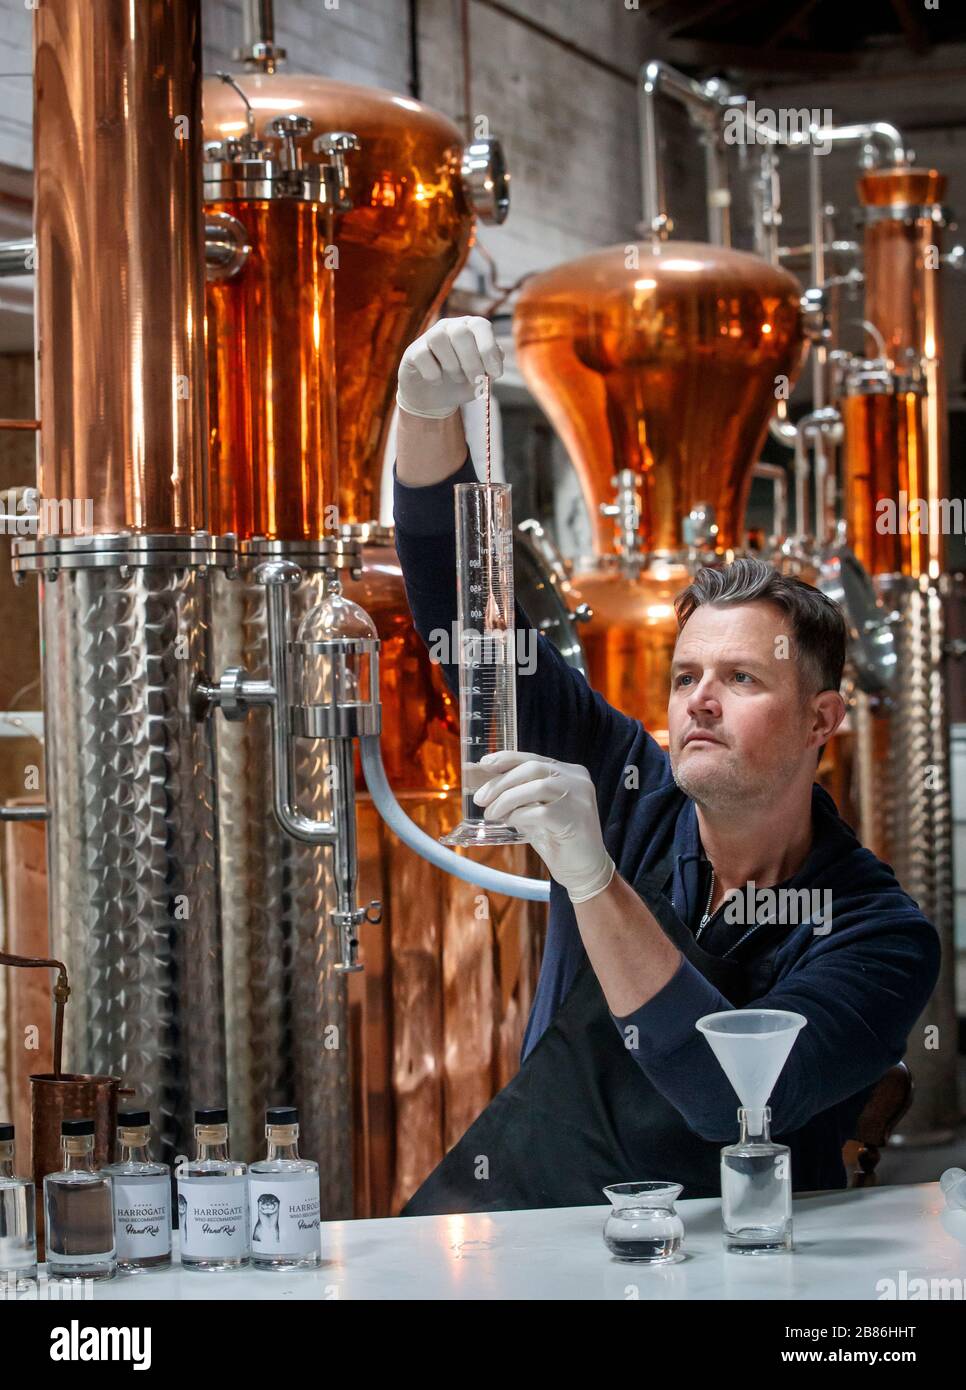 Steven Green, Gründer von Harrogate Tipple, macht Handdesinfektionsmittel in seiner Gin-Destillerie in North Yorkshire, da sein Unternehmen beginnt, Desinfektionsmittel gemäß den Empfehlungen der Weltgesundheitsorganisation zu produzieren, um die Versorgung inmitten der Coronavirus-Krise zu steigern. Stockfoto